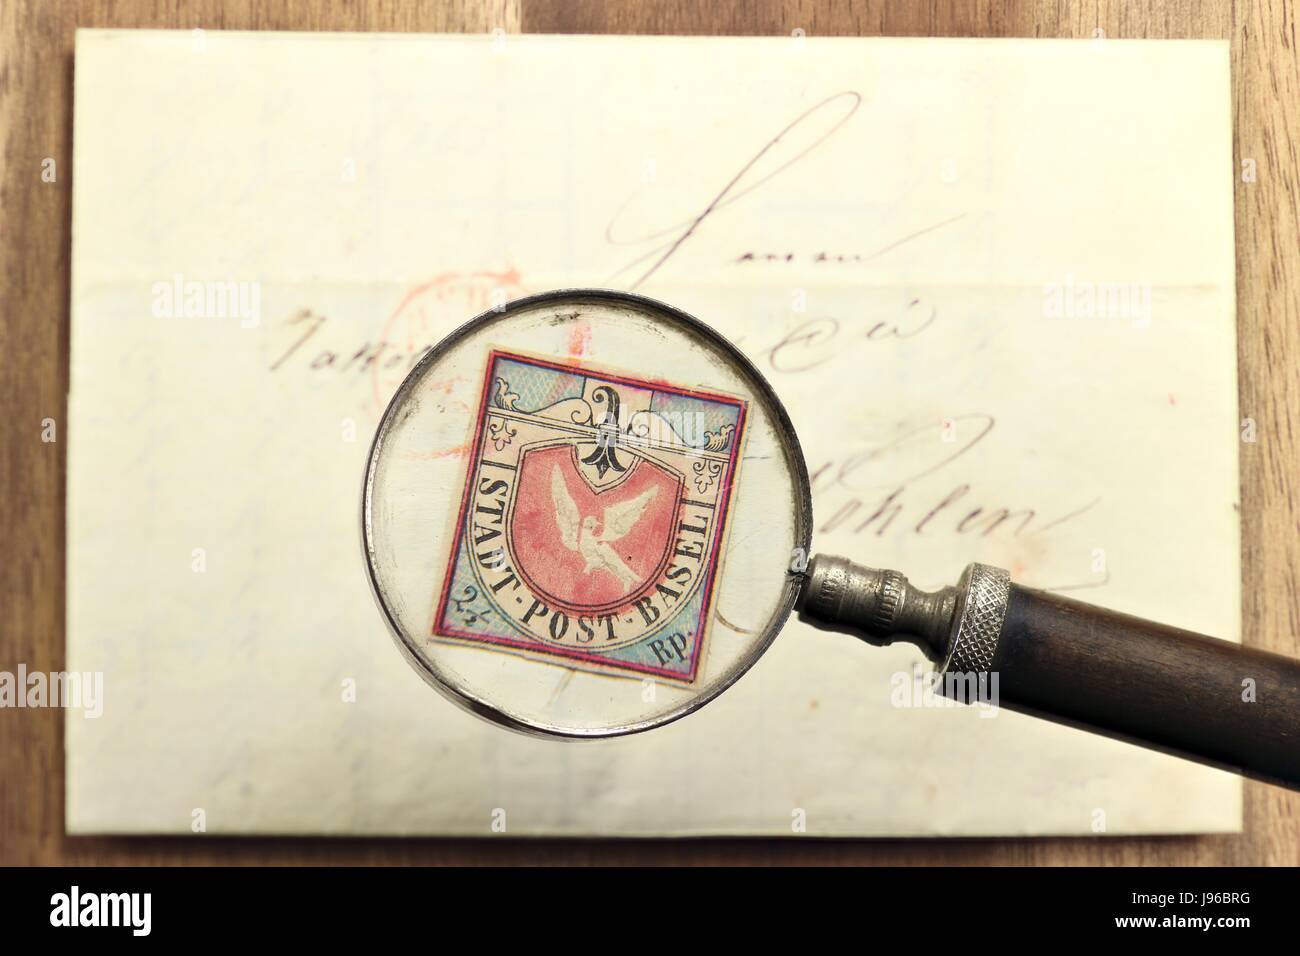 La contraffazione di Colomba di Basilea. La colomba di Basilea è un notevole timbro rilasciato dal cantone svizzero di Basilea ed è stato il primo francobollo tricolore nel mondo. Foto Stock